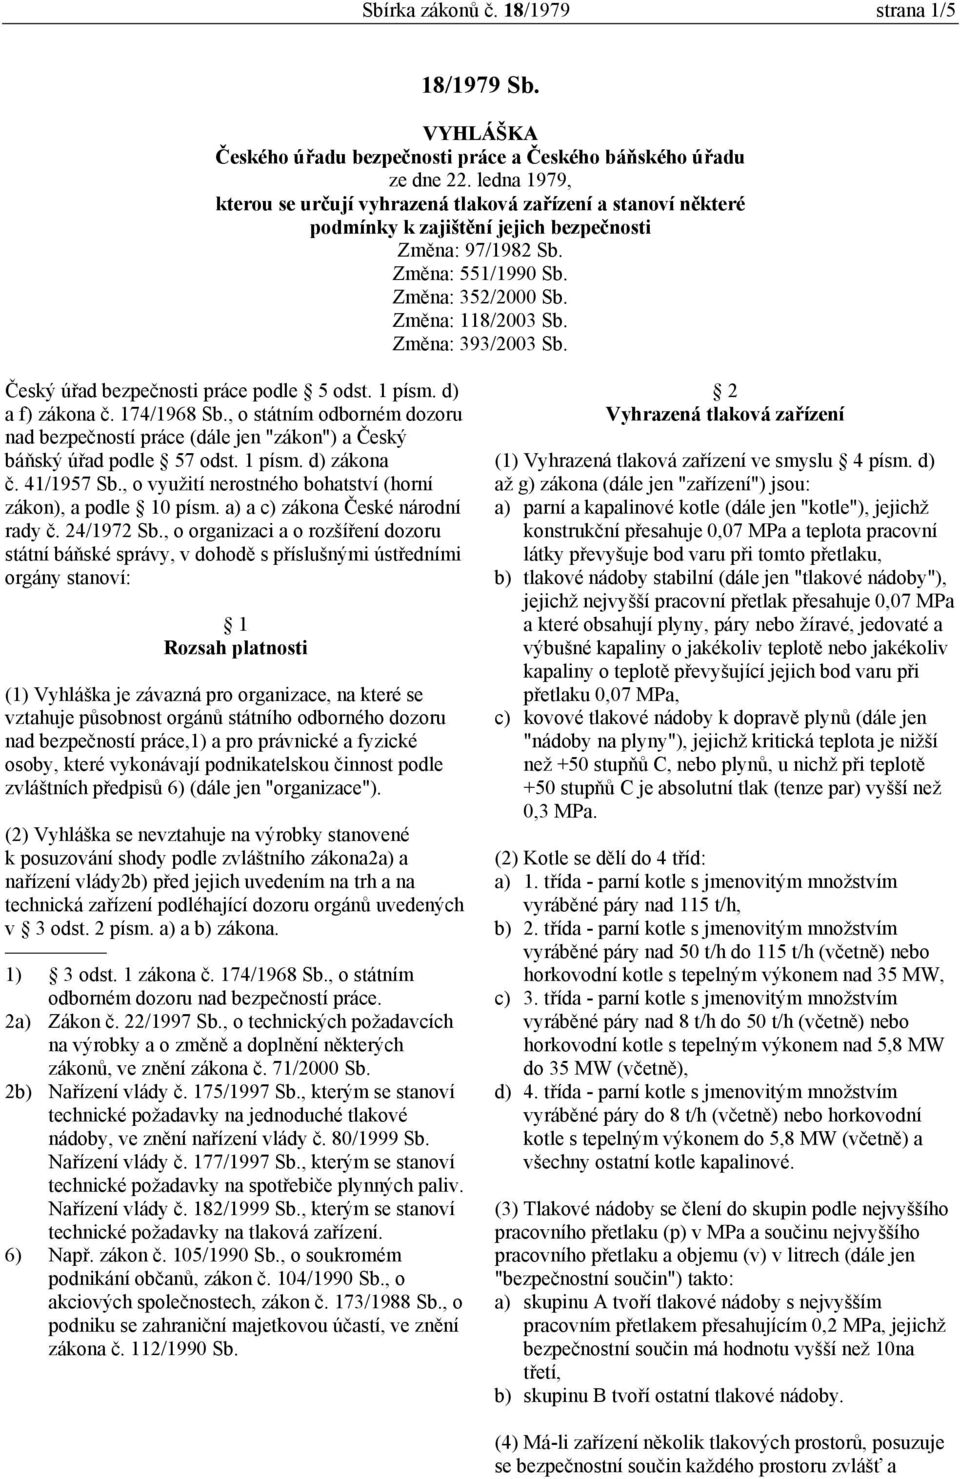 Změna: 393/2003 Sb. Český úřad bezpečnosti práce podle 5 odst. 1 písm. d) a f) zákona č. 174/1968 Sb.